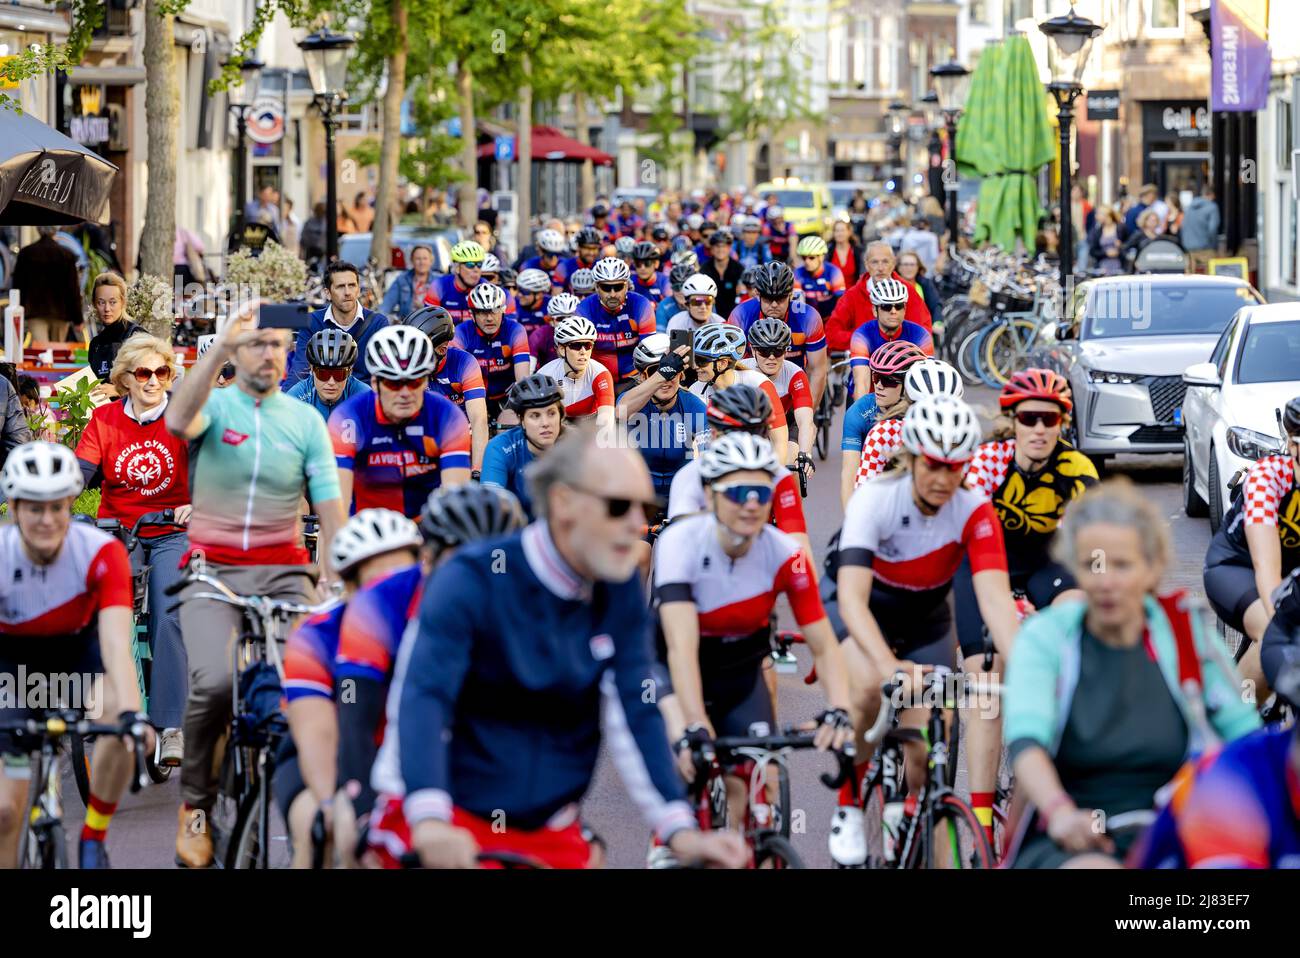 2022-05-12 18:59:17 UTRECHT - il peloton arriva al Neude, durante un evento che guarda in anticipo alla manifestazione ciclistica il Tour della Spagna. Le tre tappe olandesi si svolgeranno in un centinaio di giorni. ANP ROBIN VAN LONKHUIJSEN olanda OUT - belgio OUT Foto Stock